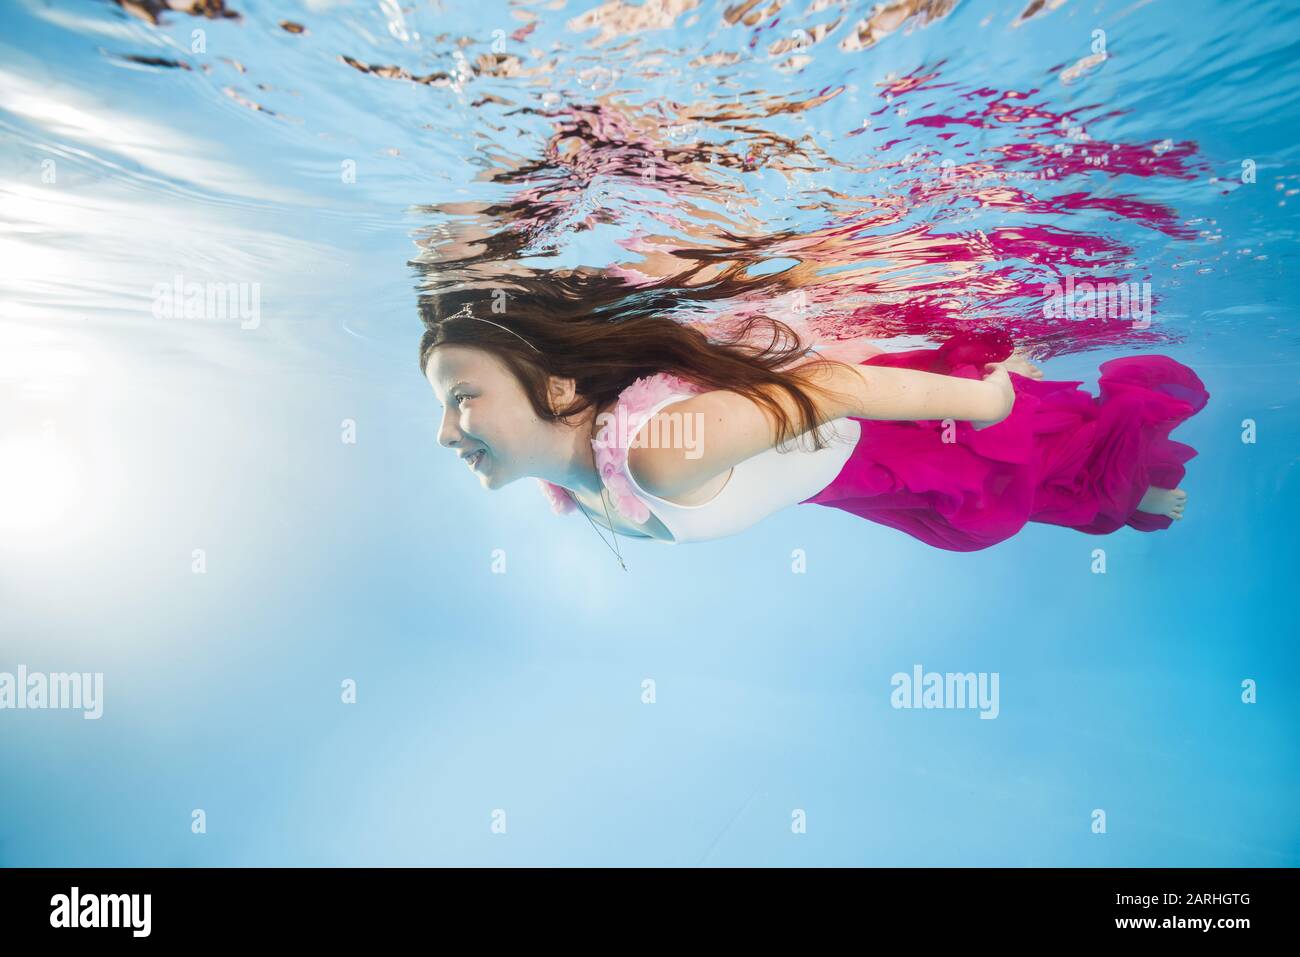 Drôle de fille dans des robes roses portant des poses sous l'eau. La jeune belle fille pose sous l'eau dans la piscine. Banque D'Images